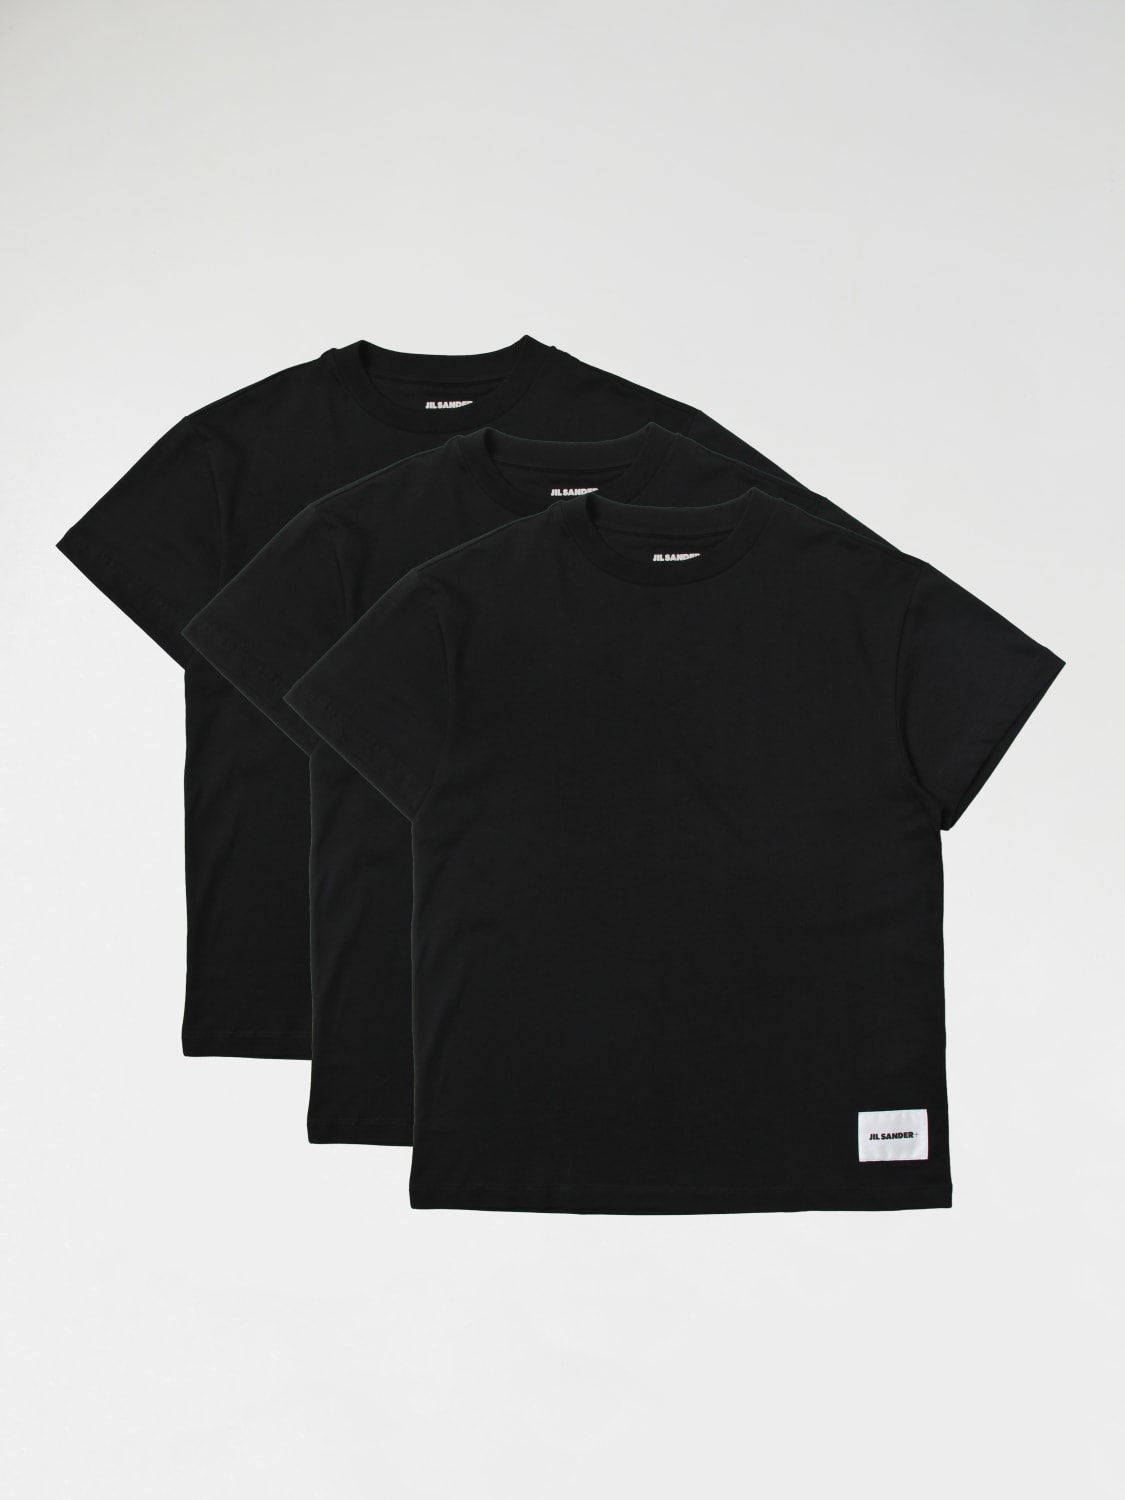 Jil Sanderアウトレット：Tシャツ メンズ - ブラック | GIGLIO.COM